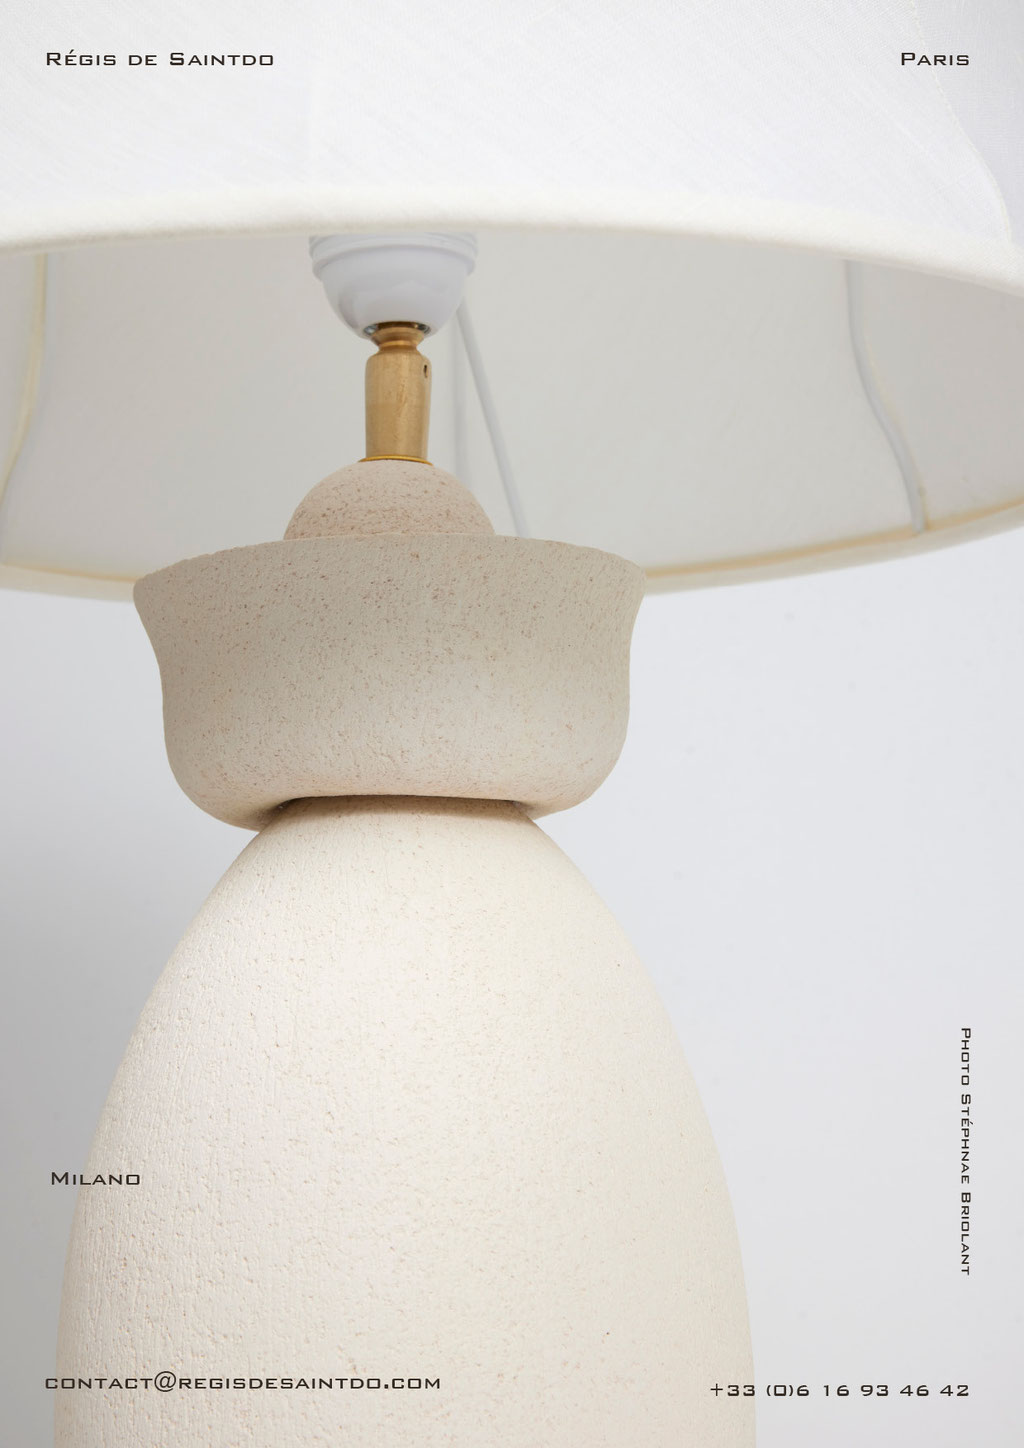 Lampe Milano-céramique blanche-fait main @Régis de Saintdo